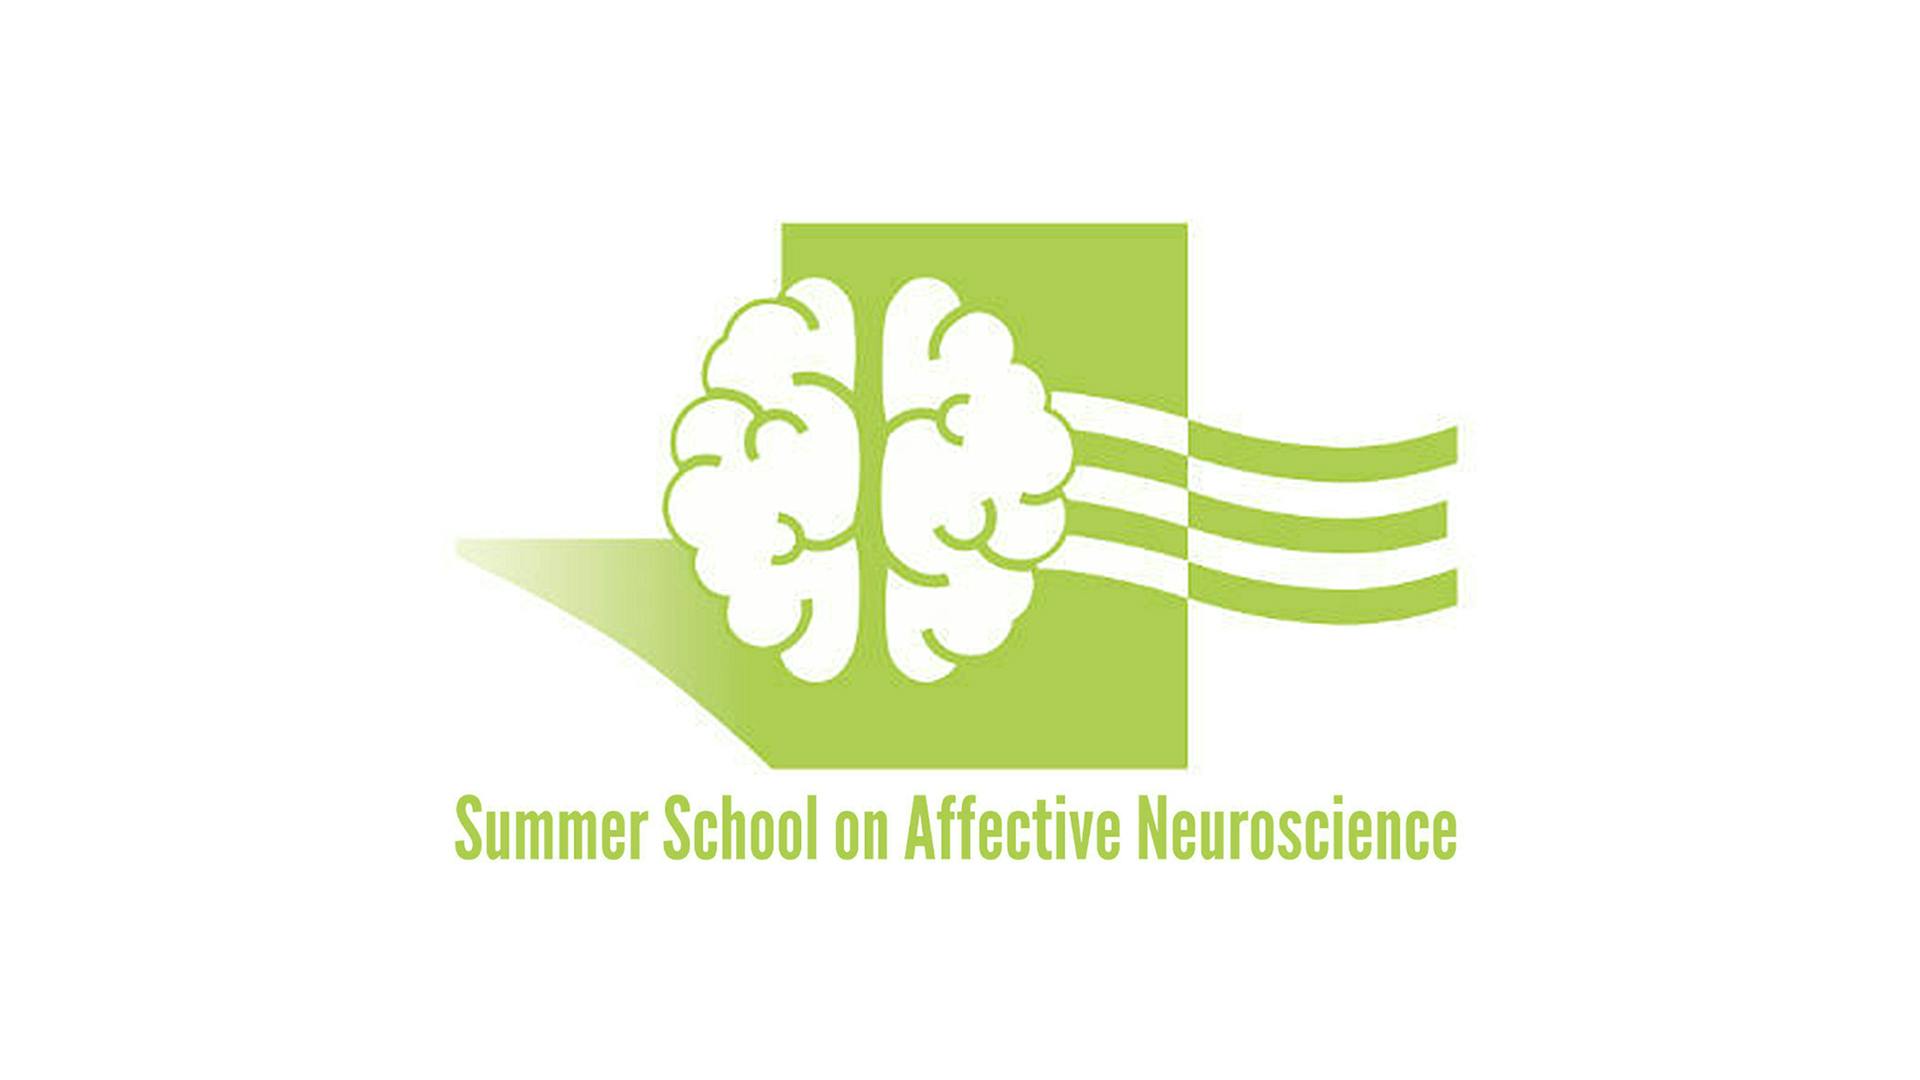 Logo del Summer School on Affective Neuroscience: un cervello stilizzato su sfondo verde.